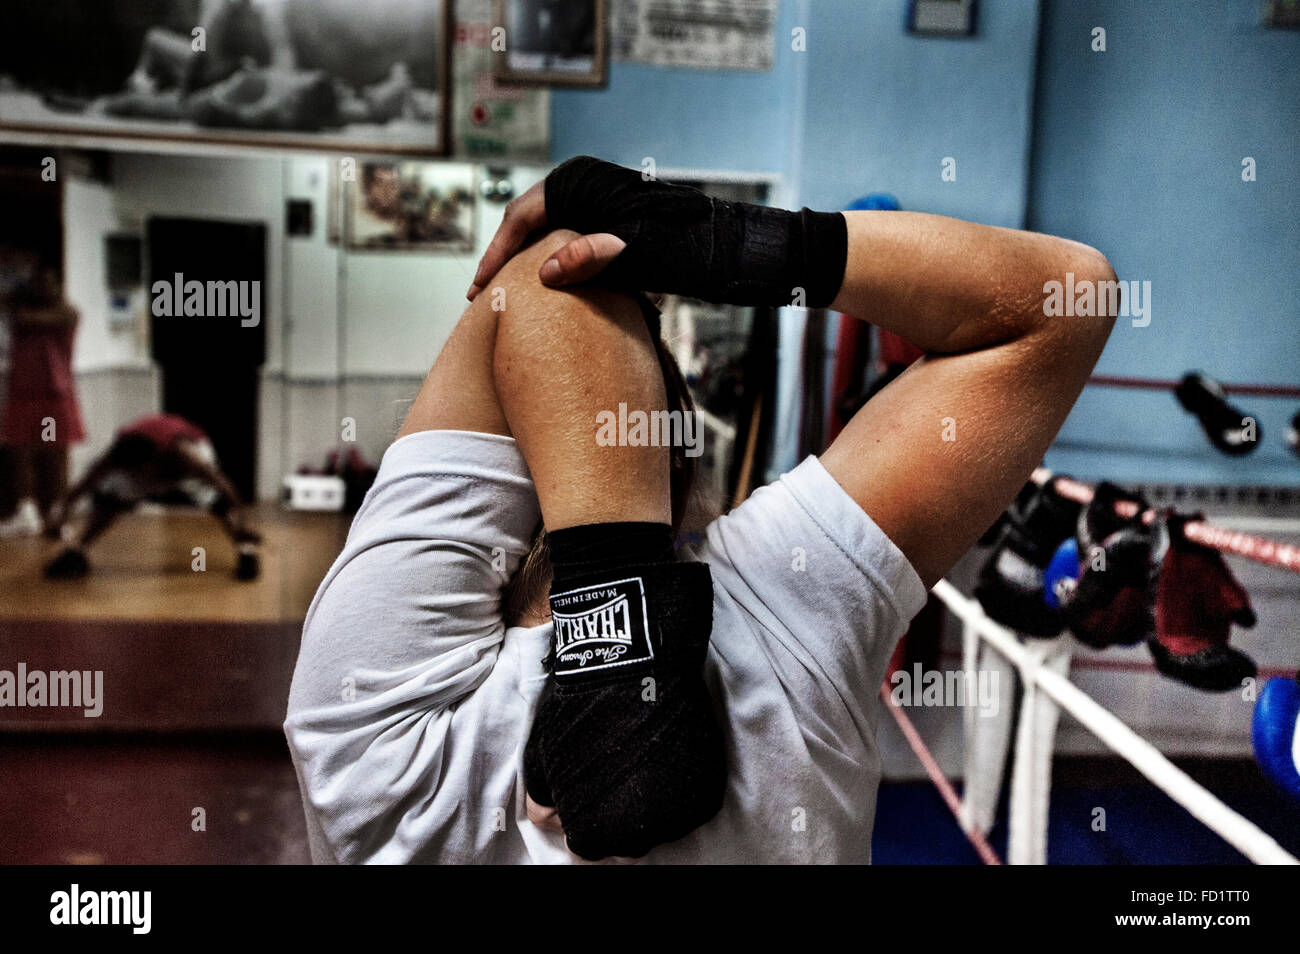 La boxeadora Alicantina Maria,realiza estiramientos antes de subirse al ring a entrenar. Stock Photo